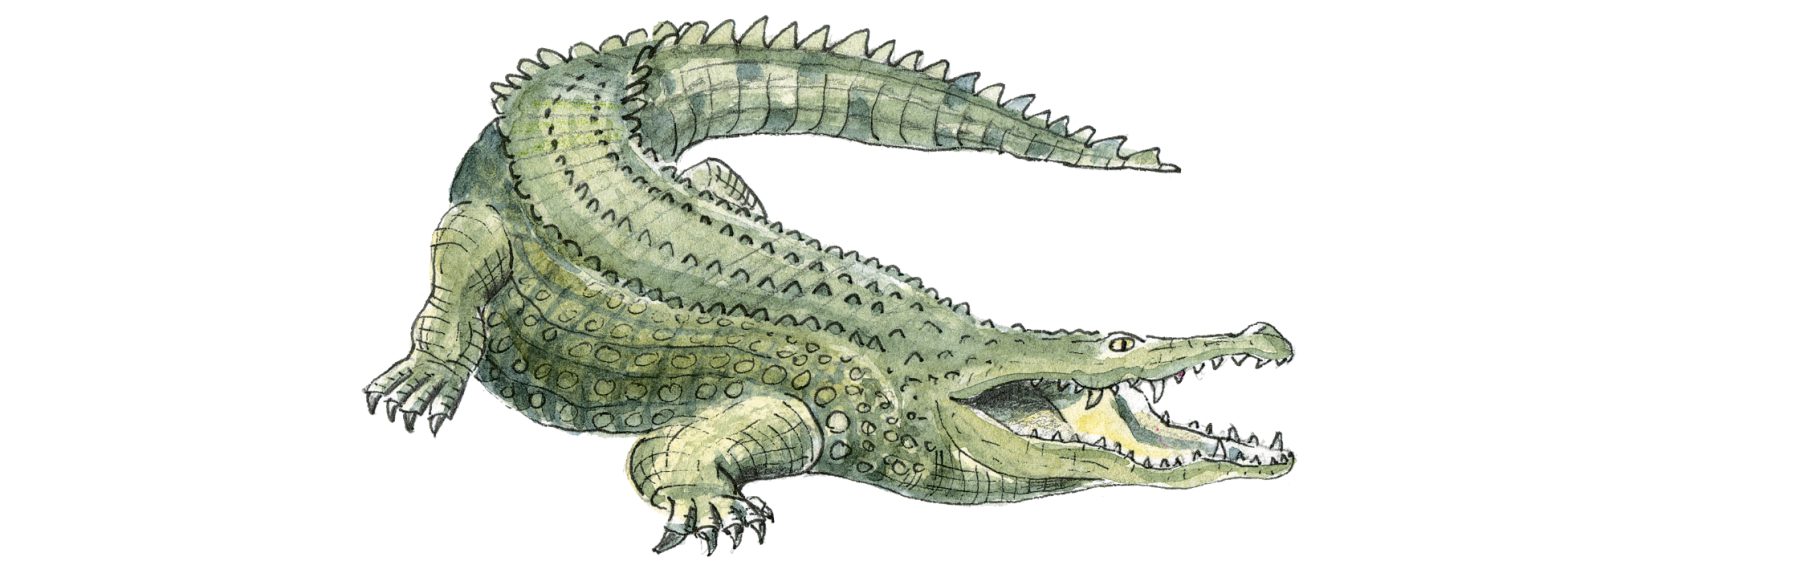 Bildresultat fÃ¶r krokodil